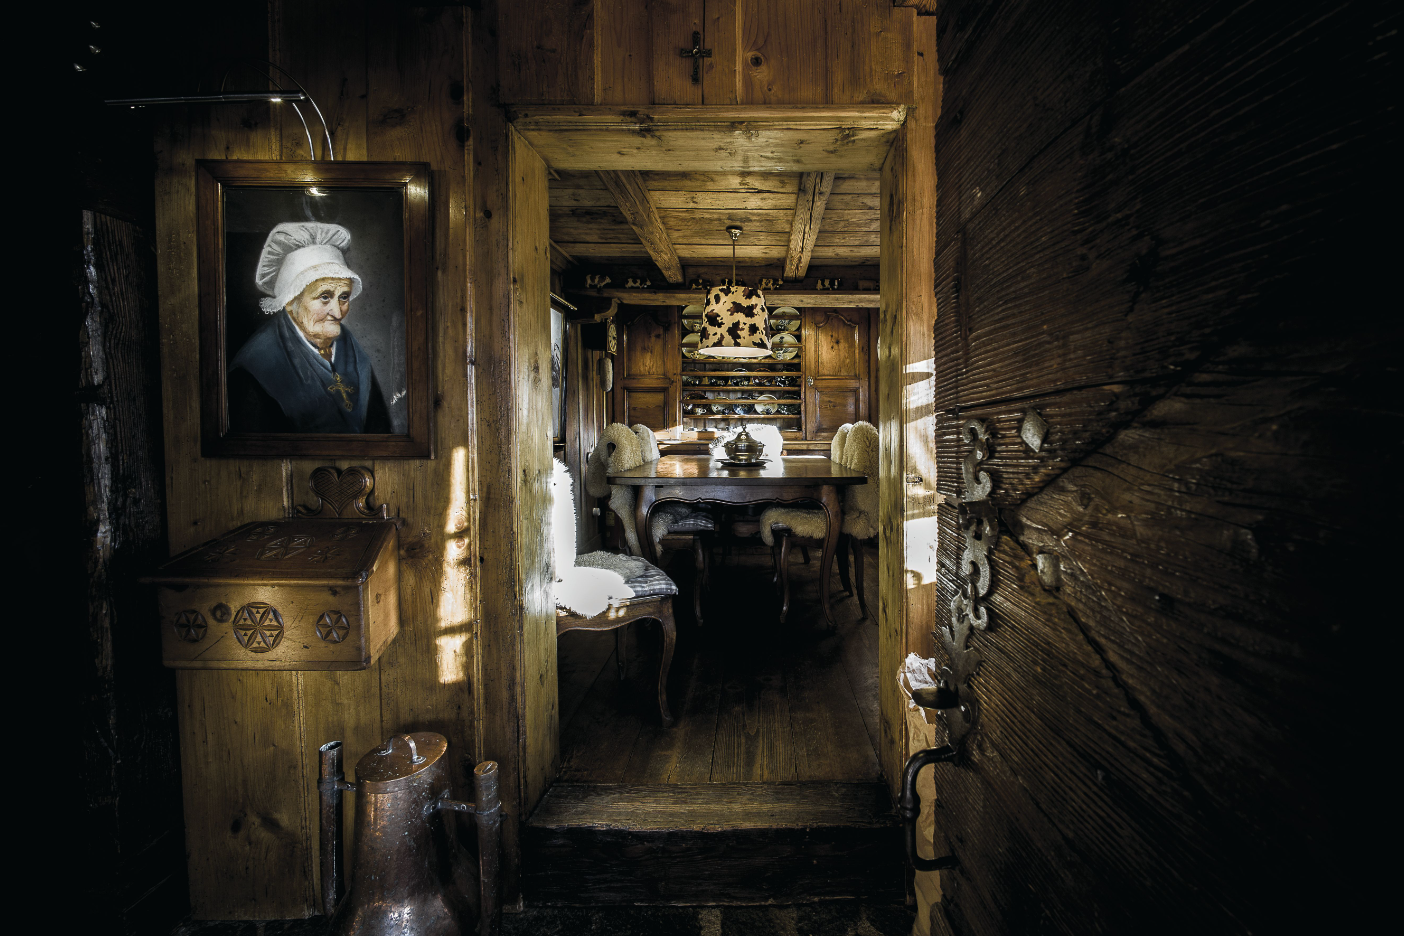 La salle à manger est décorée dans un esprit traditionnel et chaleureux où le bois est mis à l’honneur, avec des touches montagnardes loin des clichés.